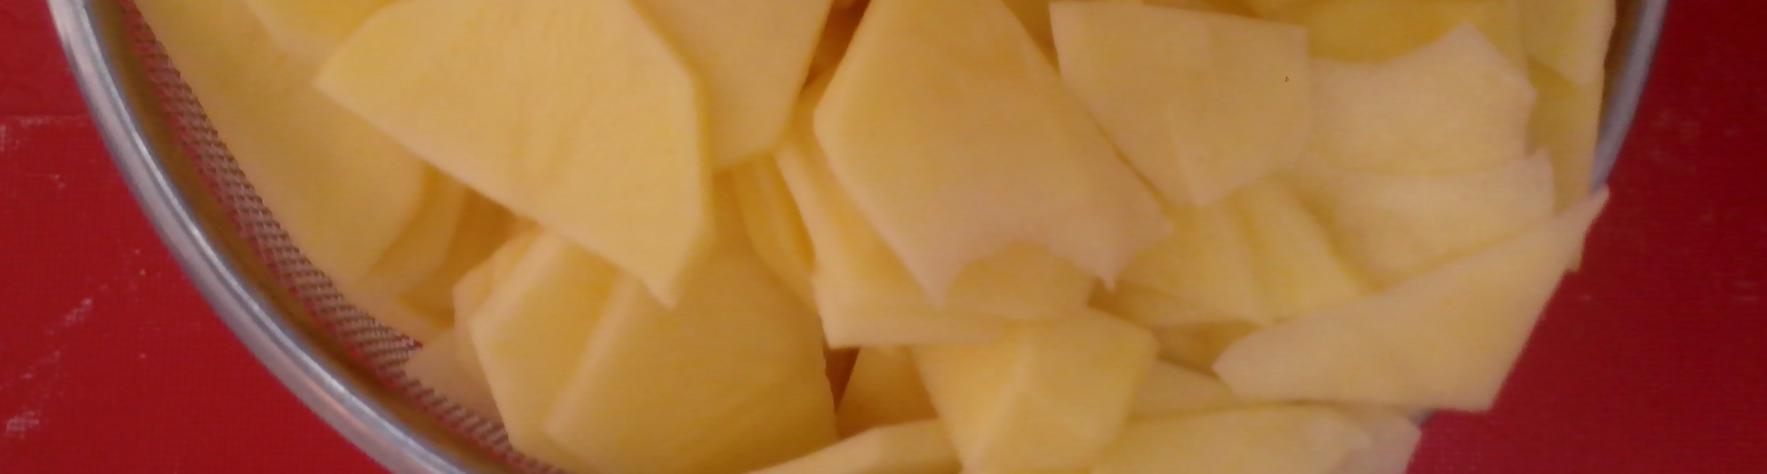 Patatas cortadas en rodajas